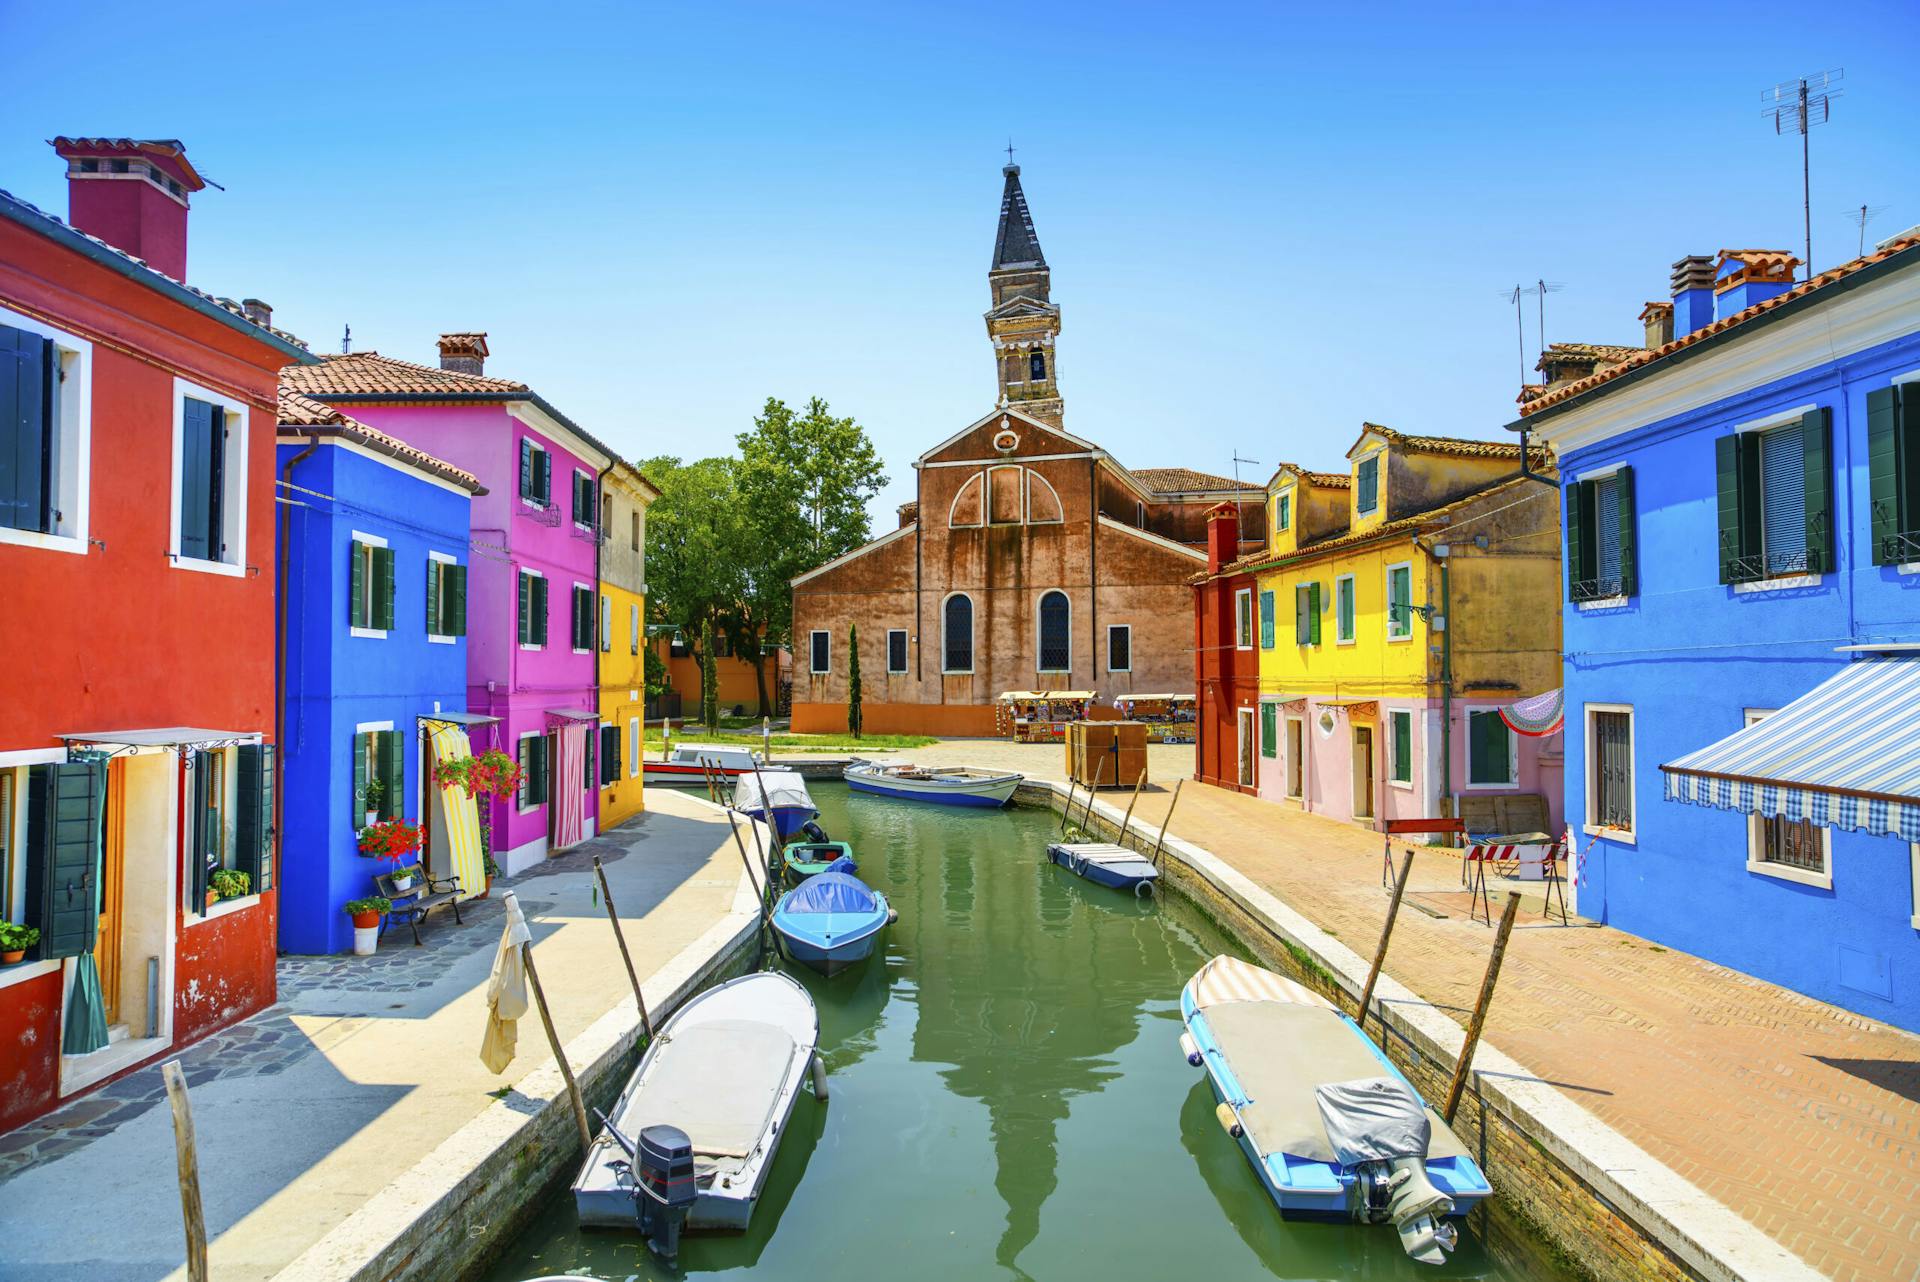 Näkymää Venetsiasta, jossa näkyy katolinen kirkko Church of Saint Martin Bishop sekä värikkäutä taloja